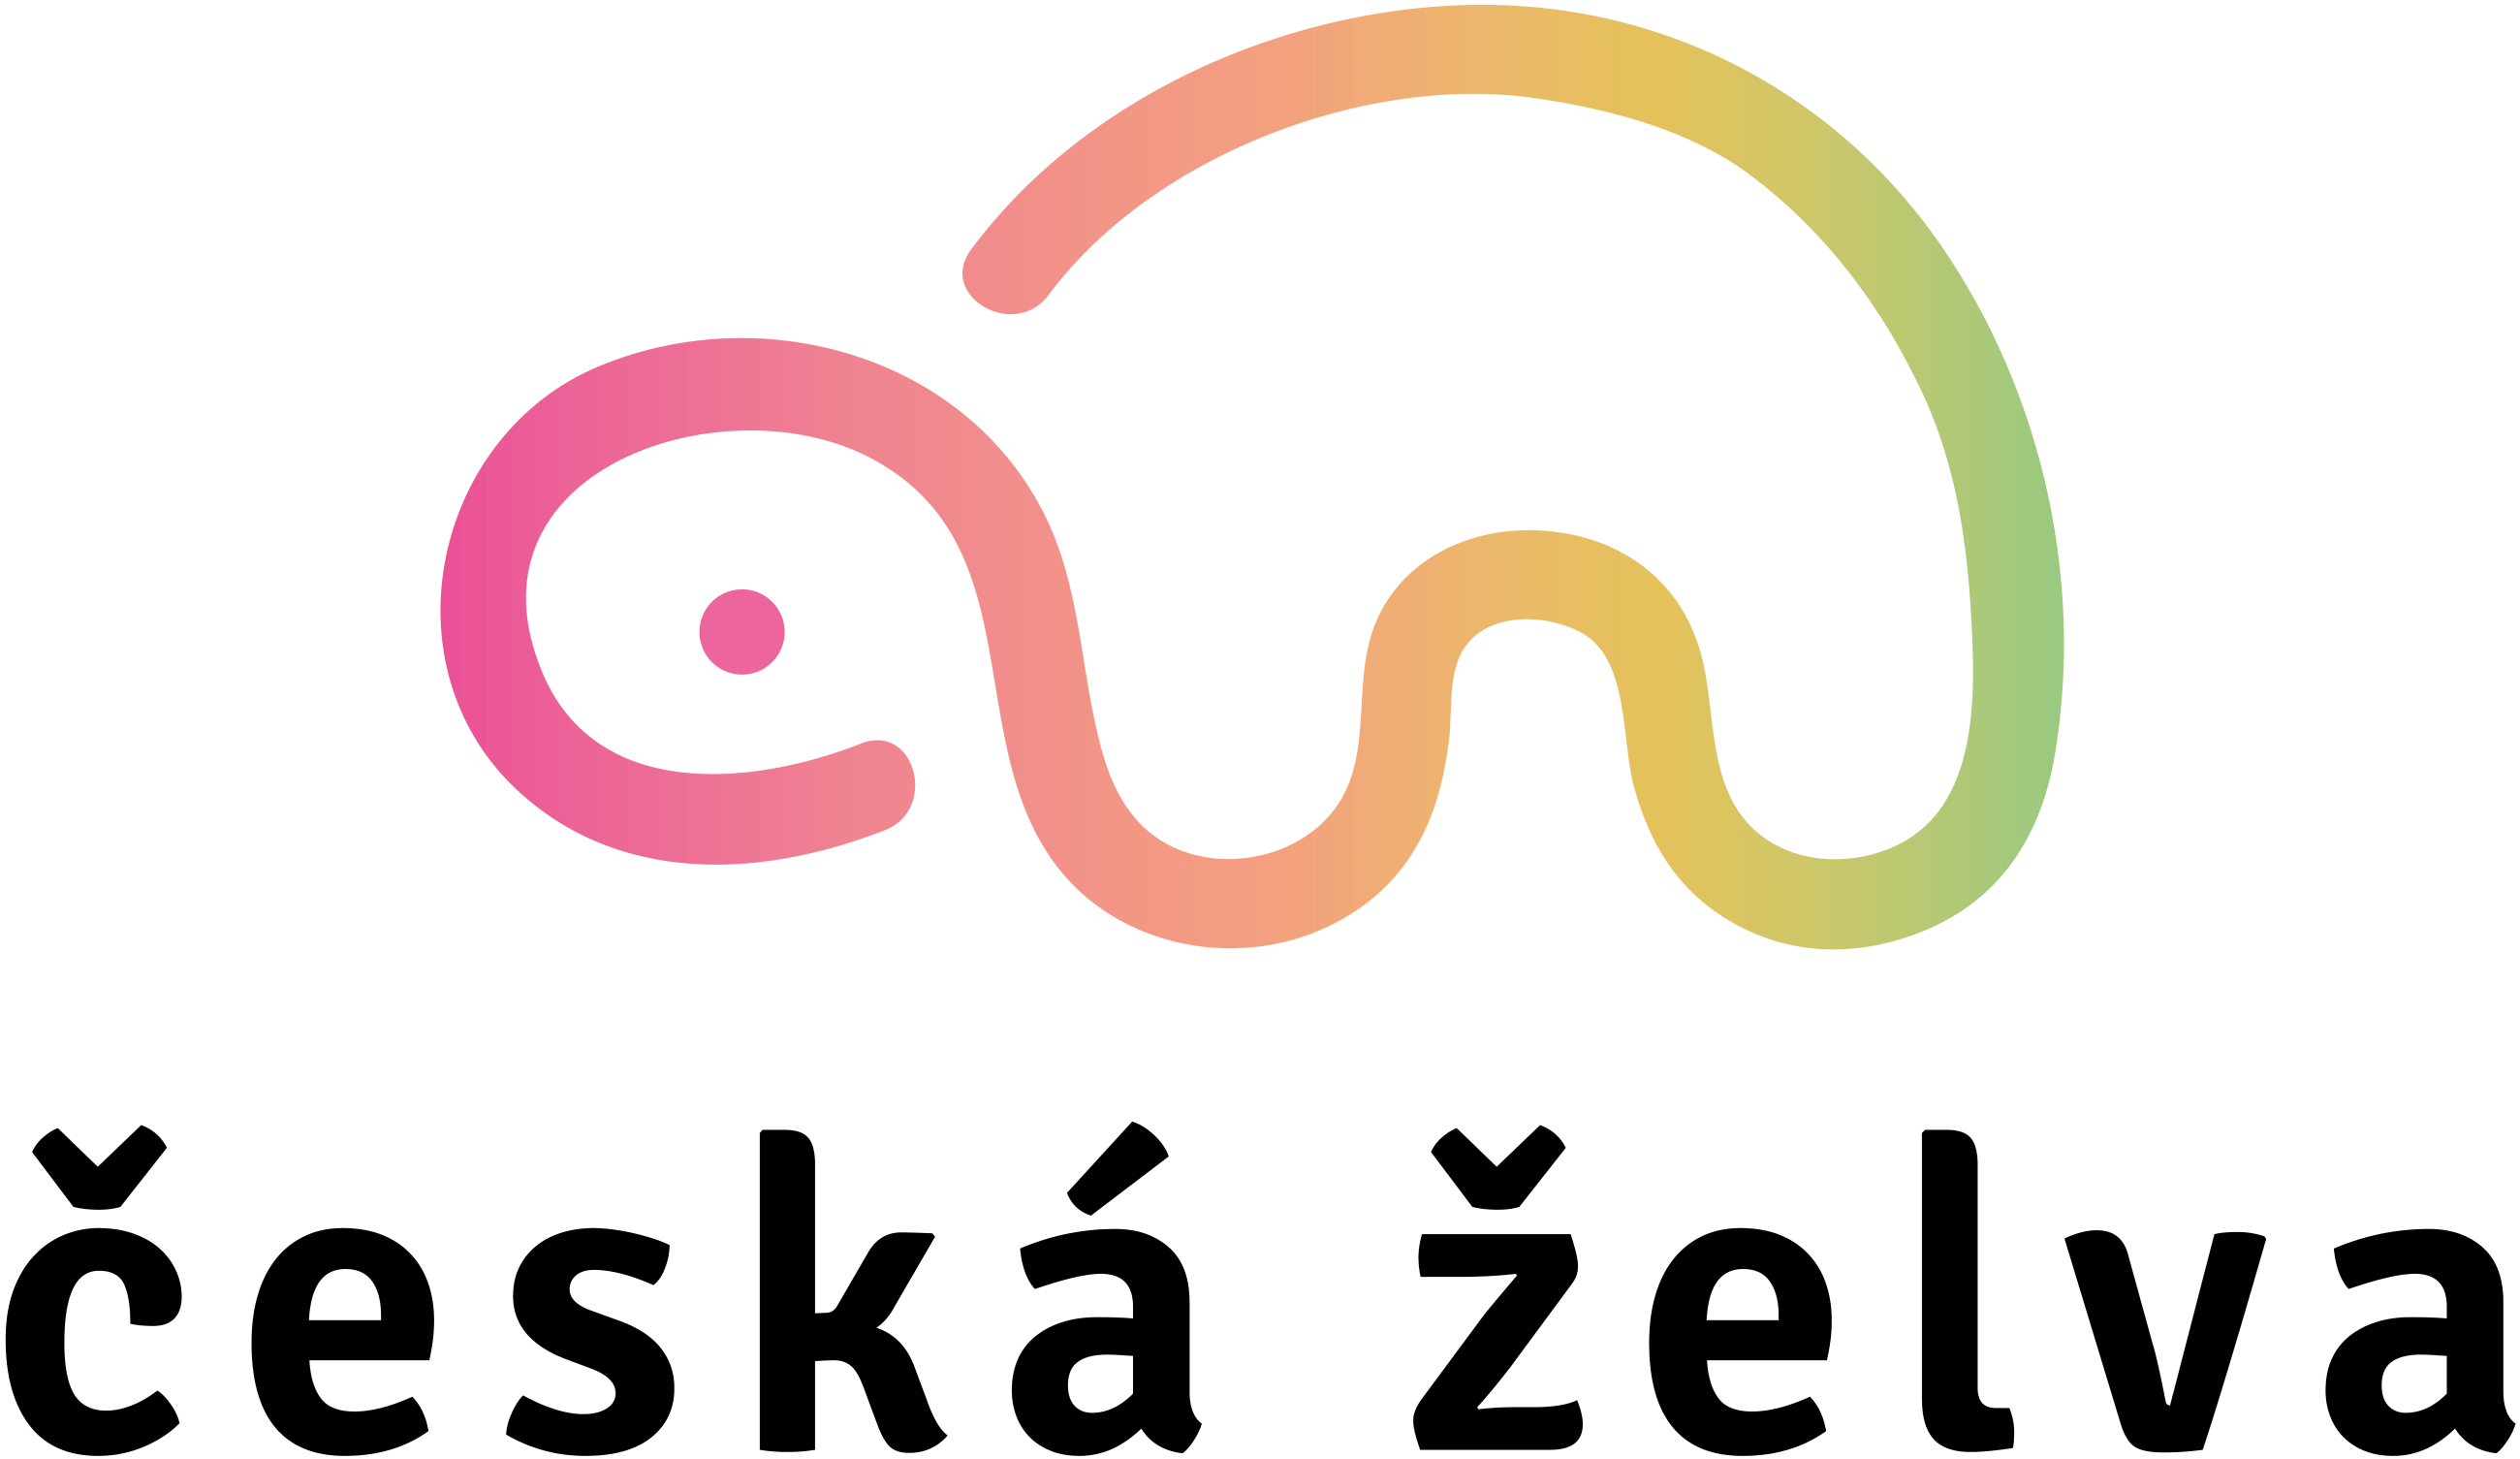 Česká želva